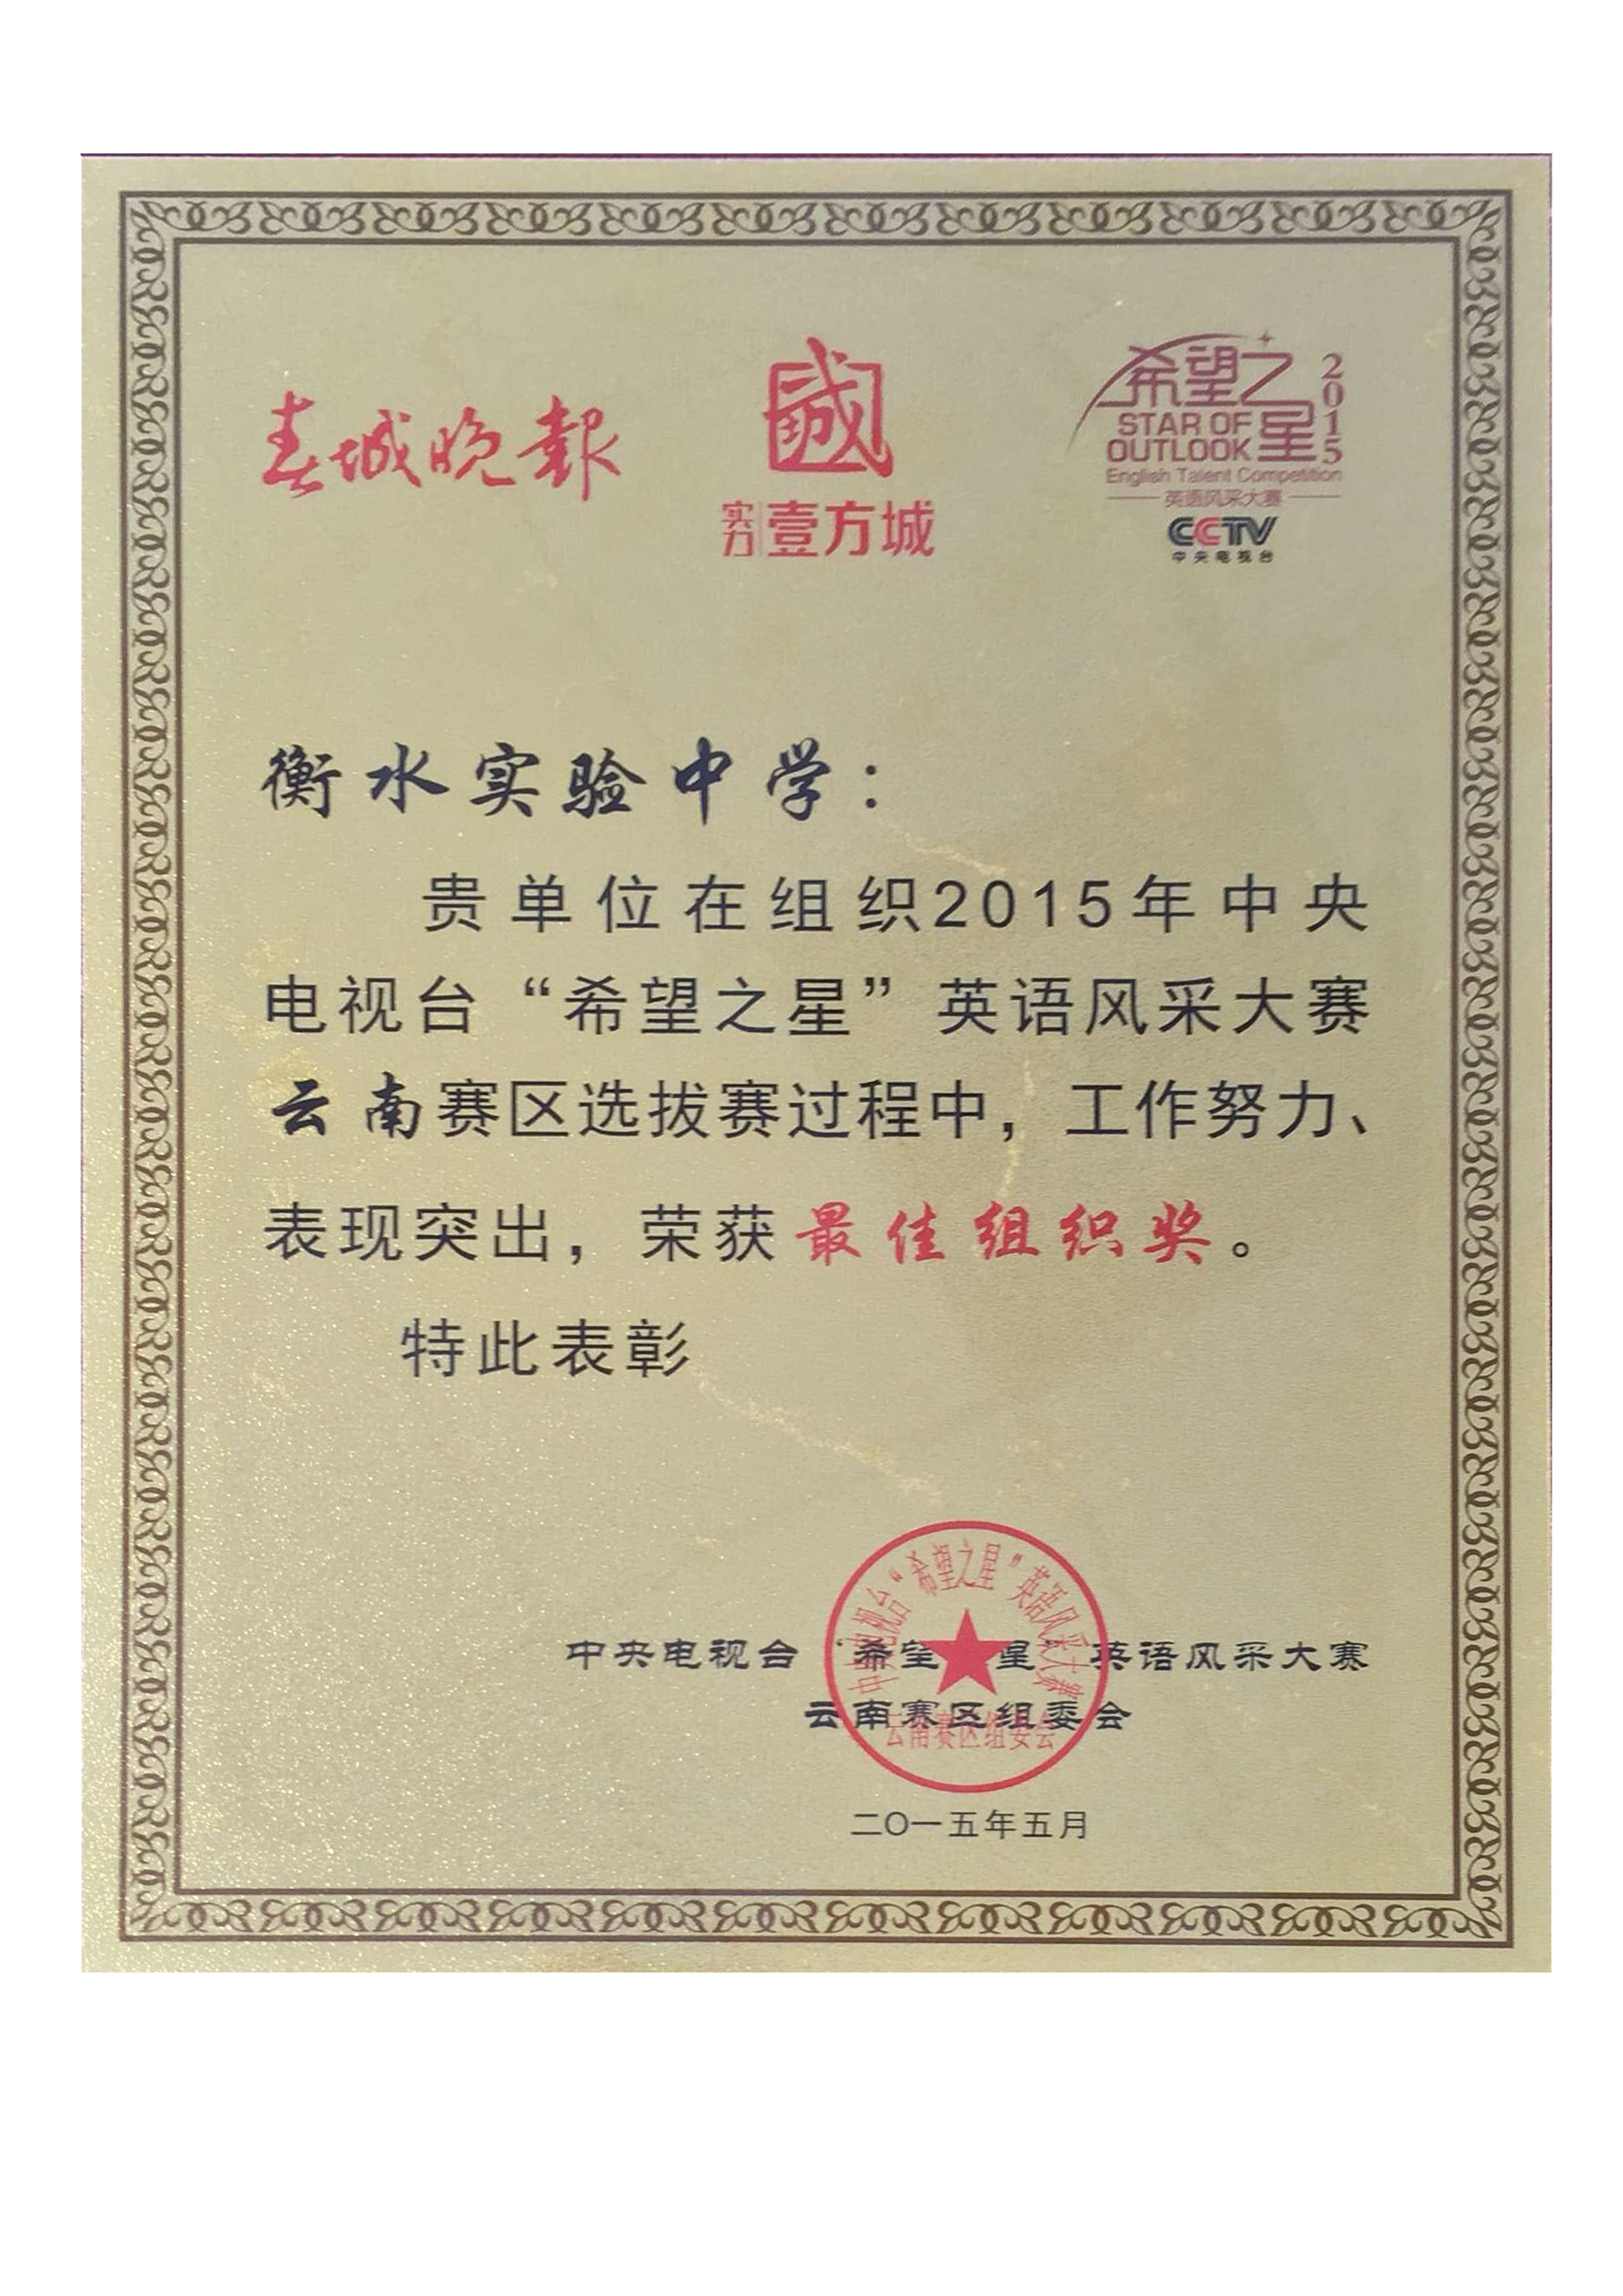 我校荣获2015年CCTV“希望之星”最佳组织奖